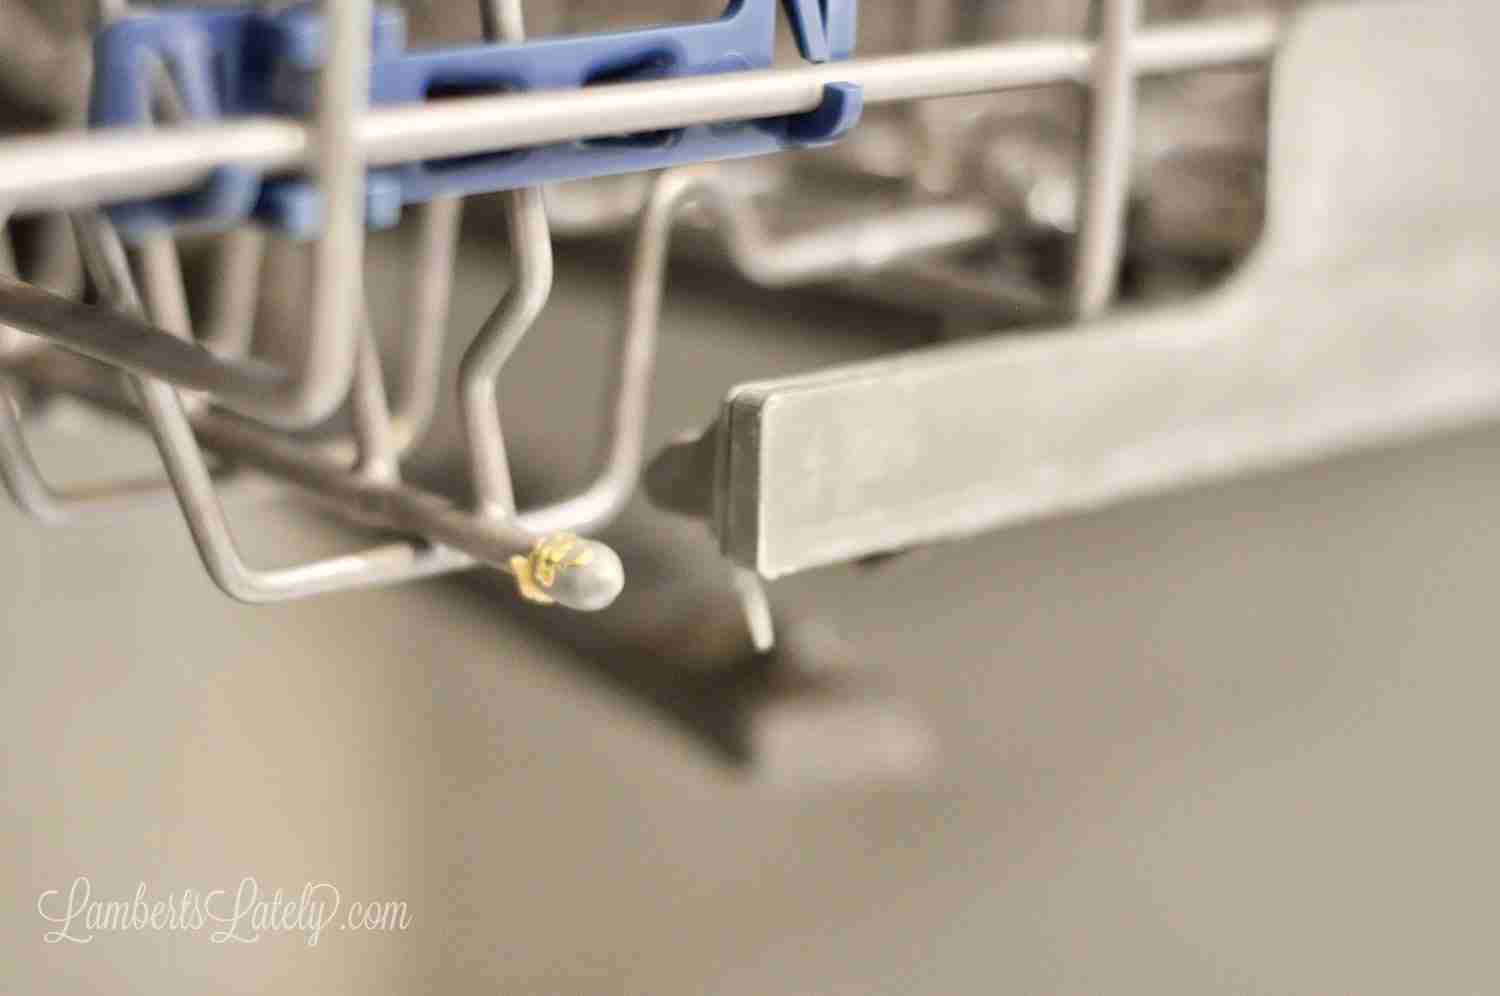 dirty edge of a dishwasher rack